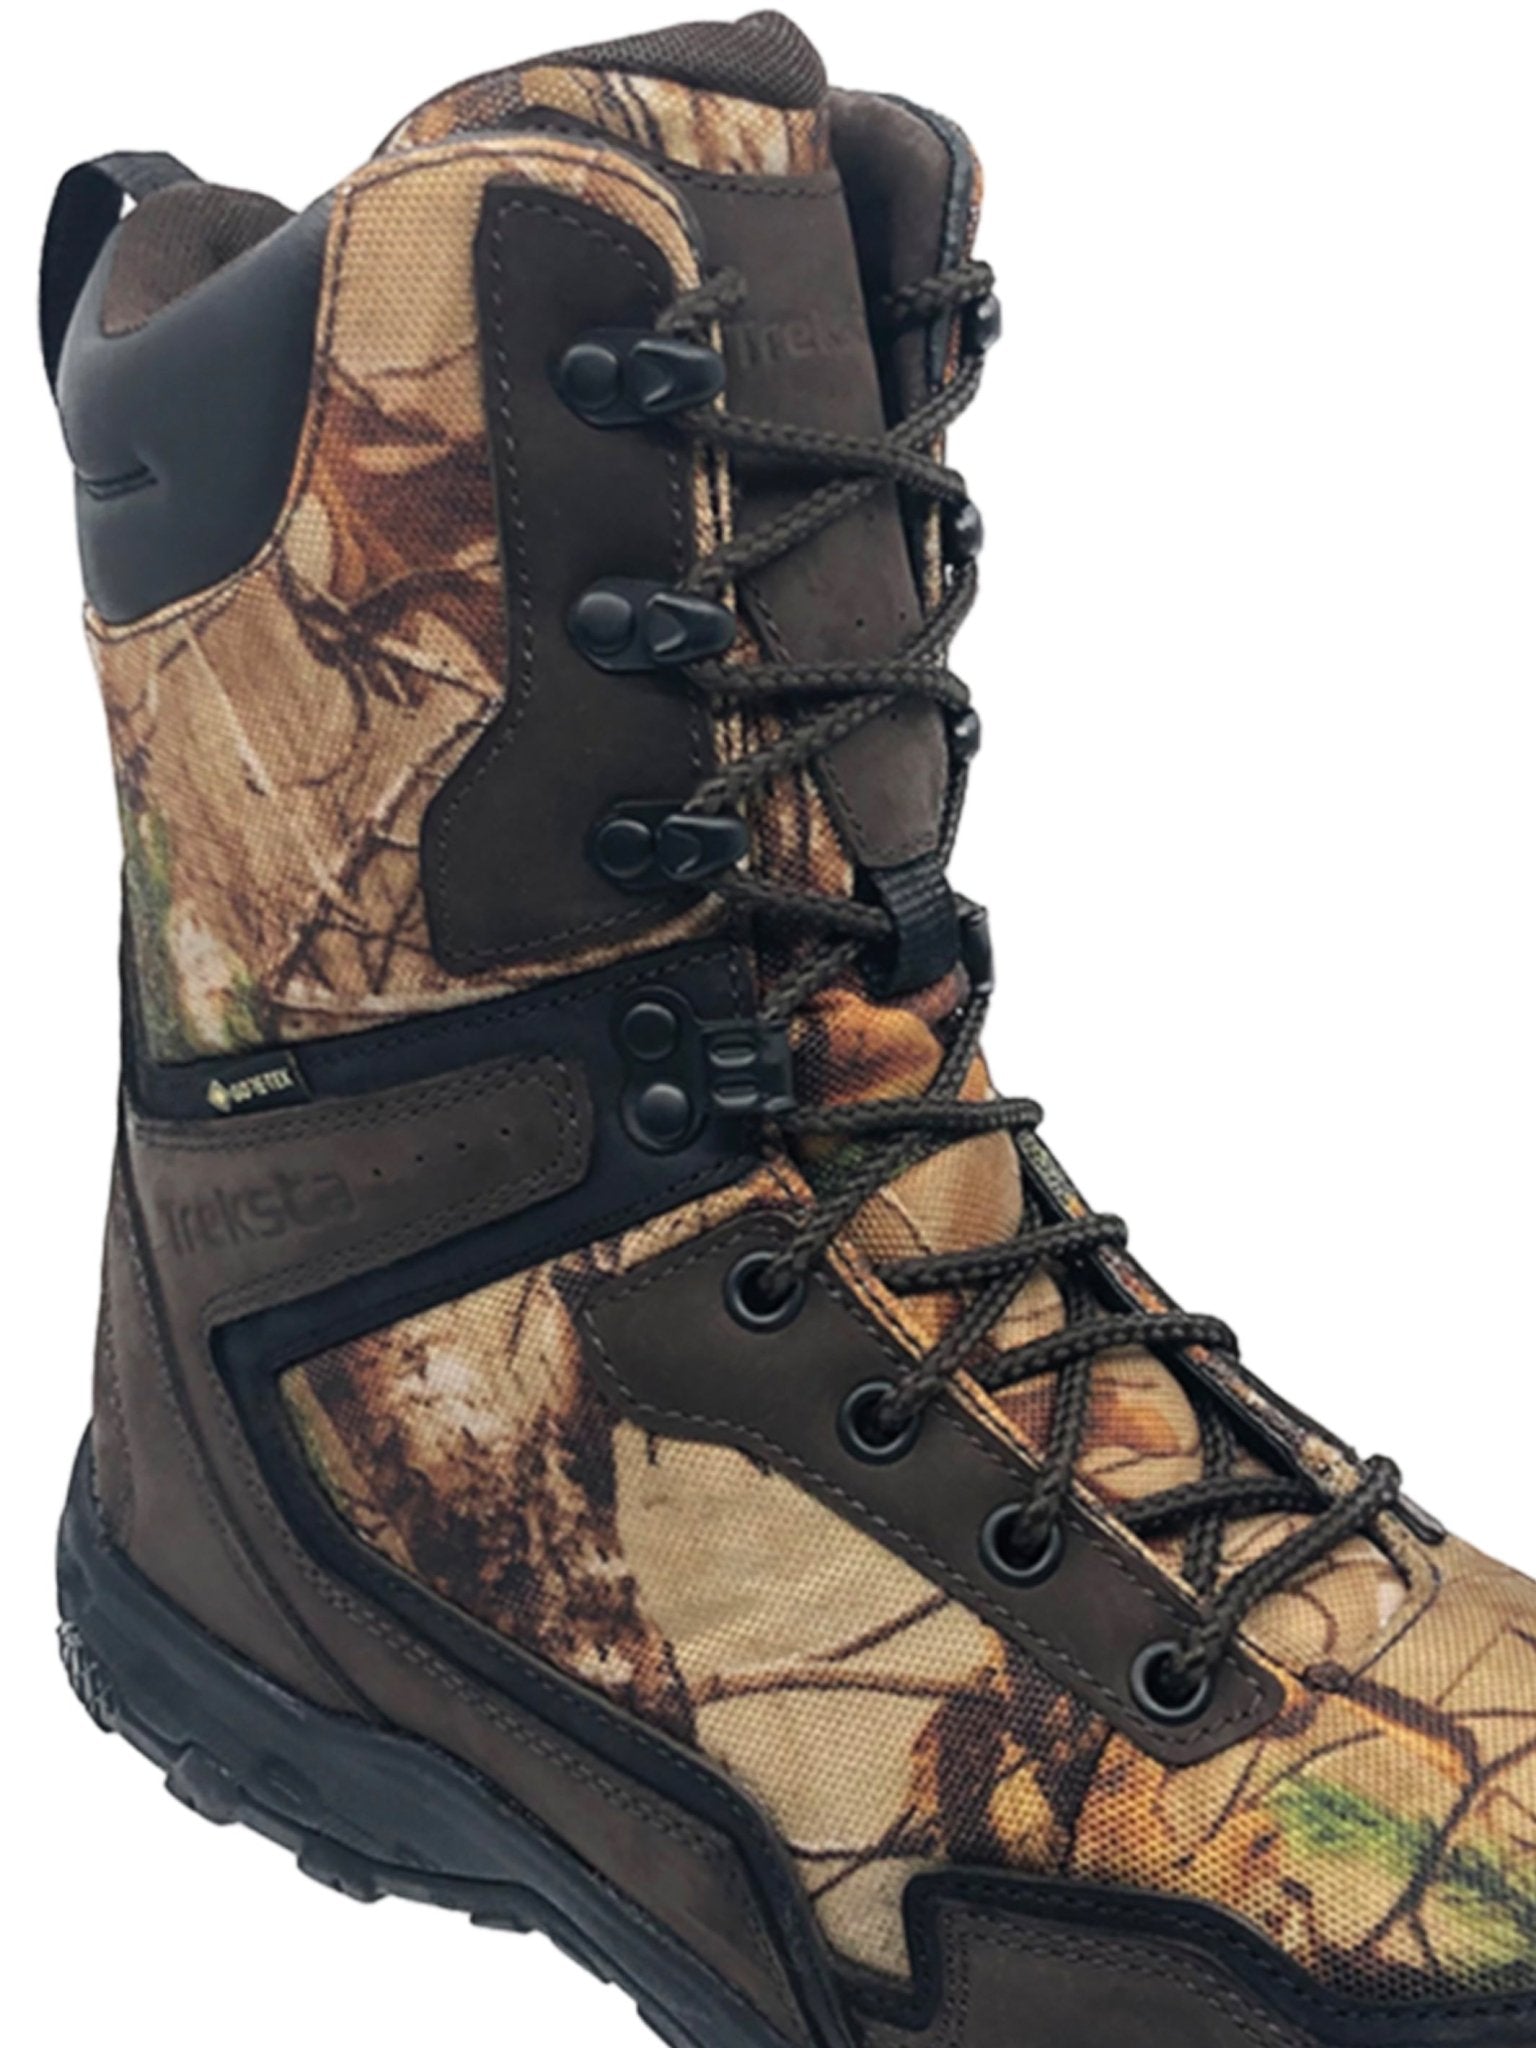 Treksta Treksta - Gore - Tex Waterproof Hereford 9" Lace up boot, with Nestfit comfort and 100% Waterproof Boots